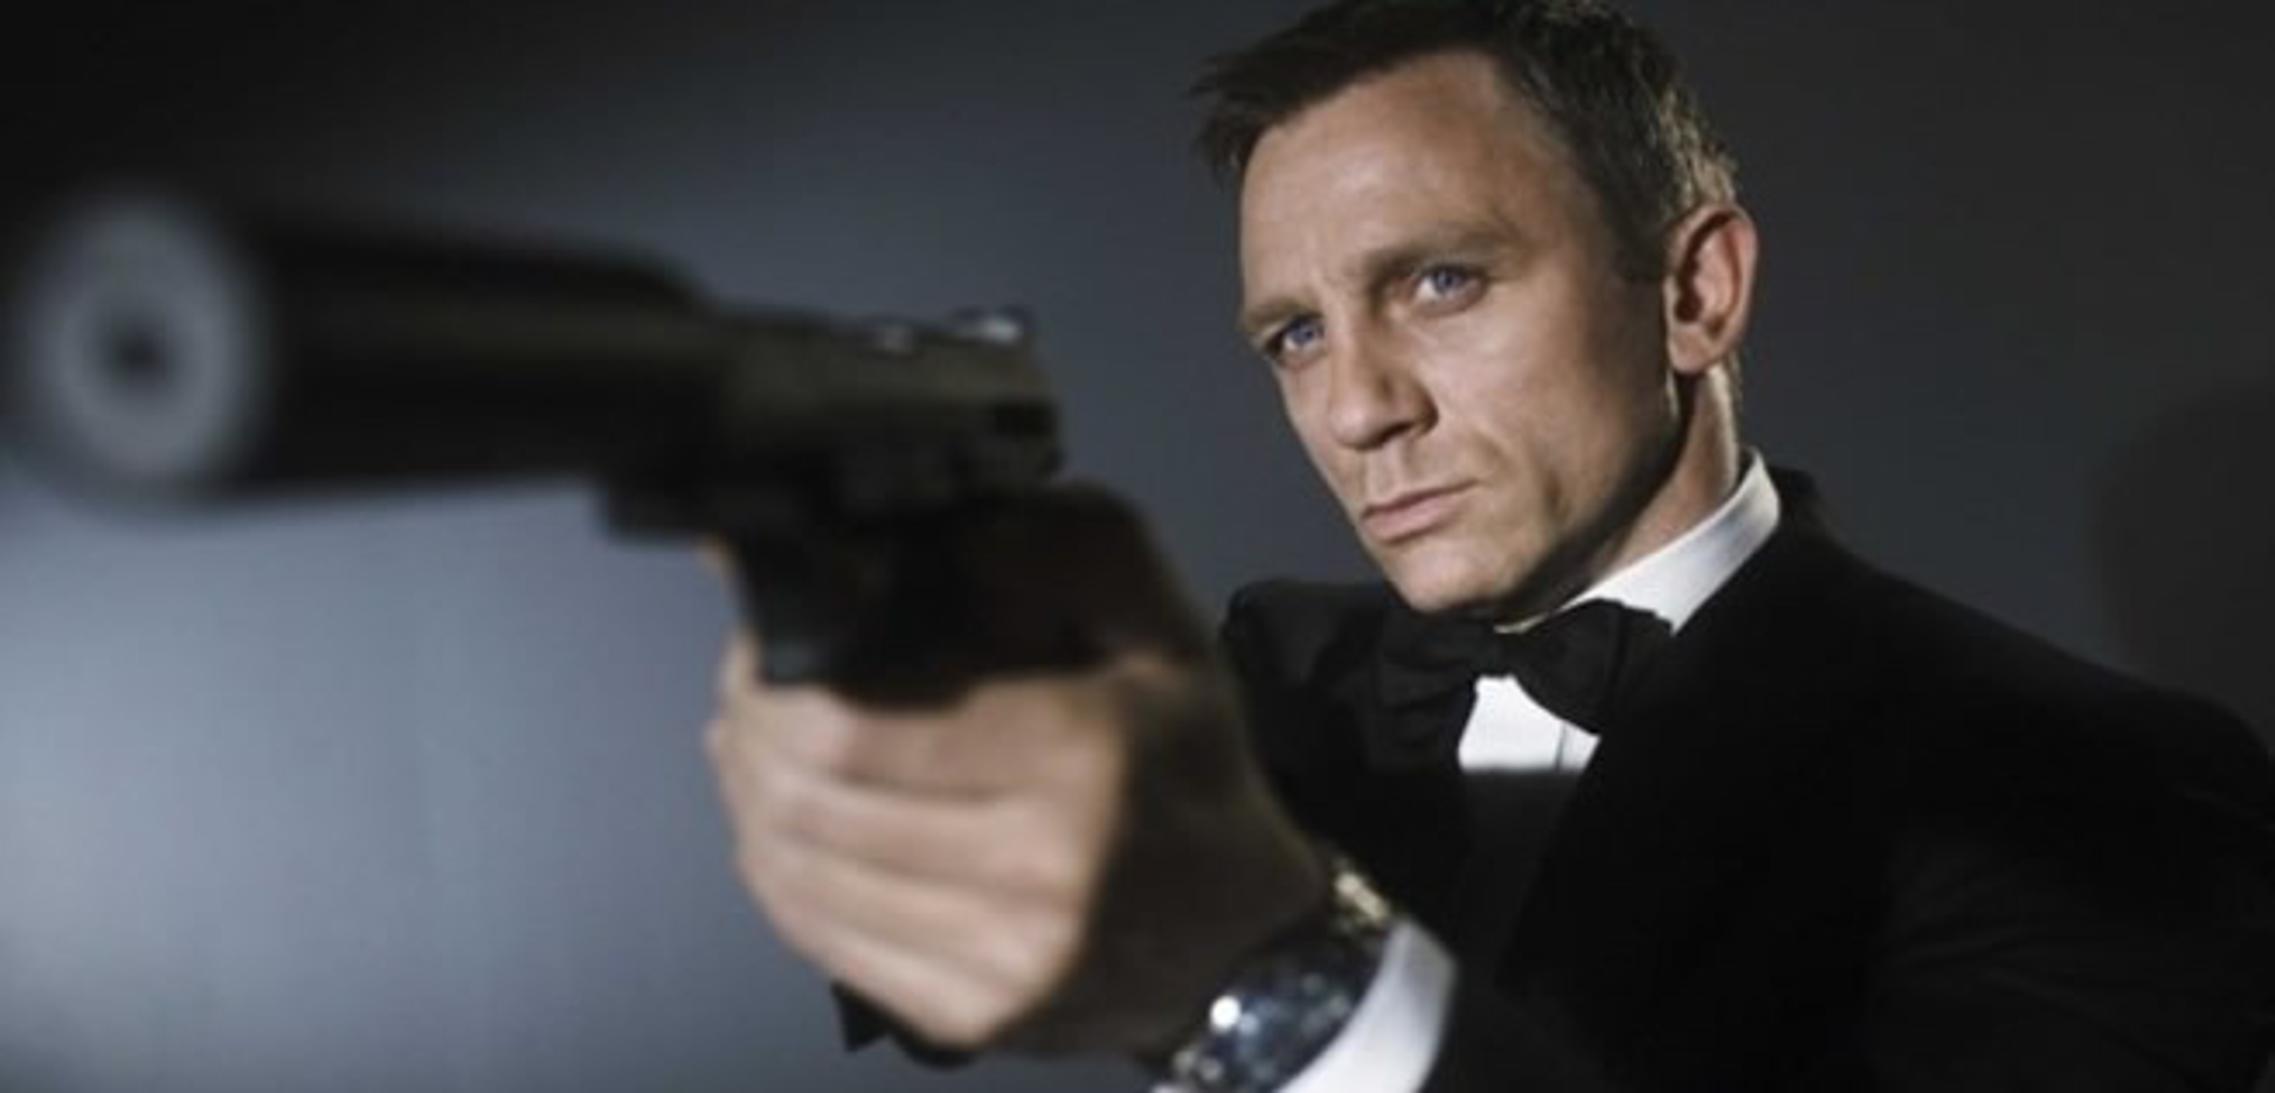 Što je James Bond spram naših elegantnih zastupnika?